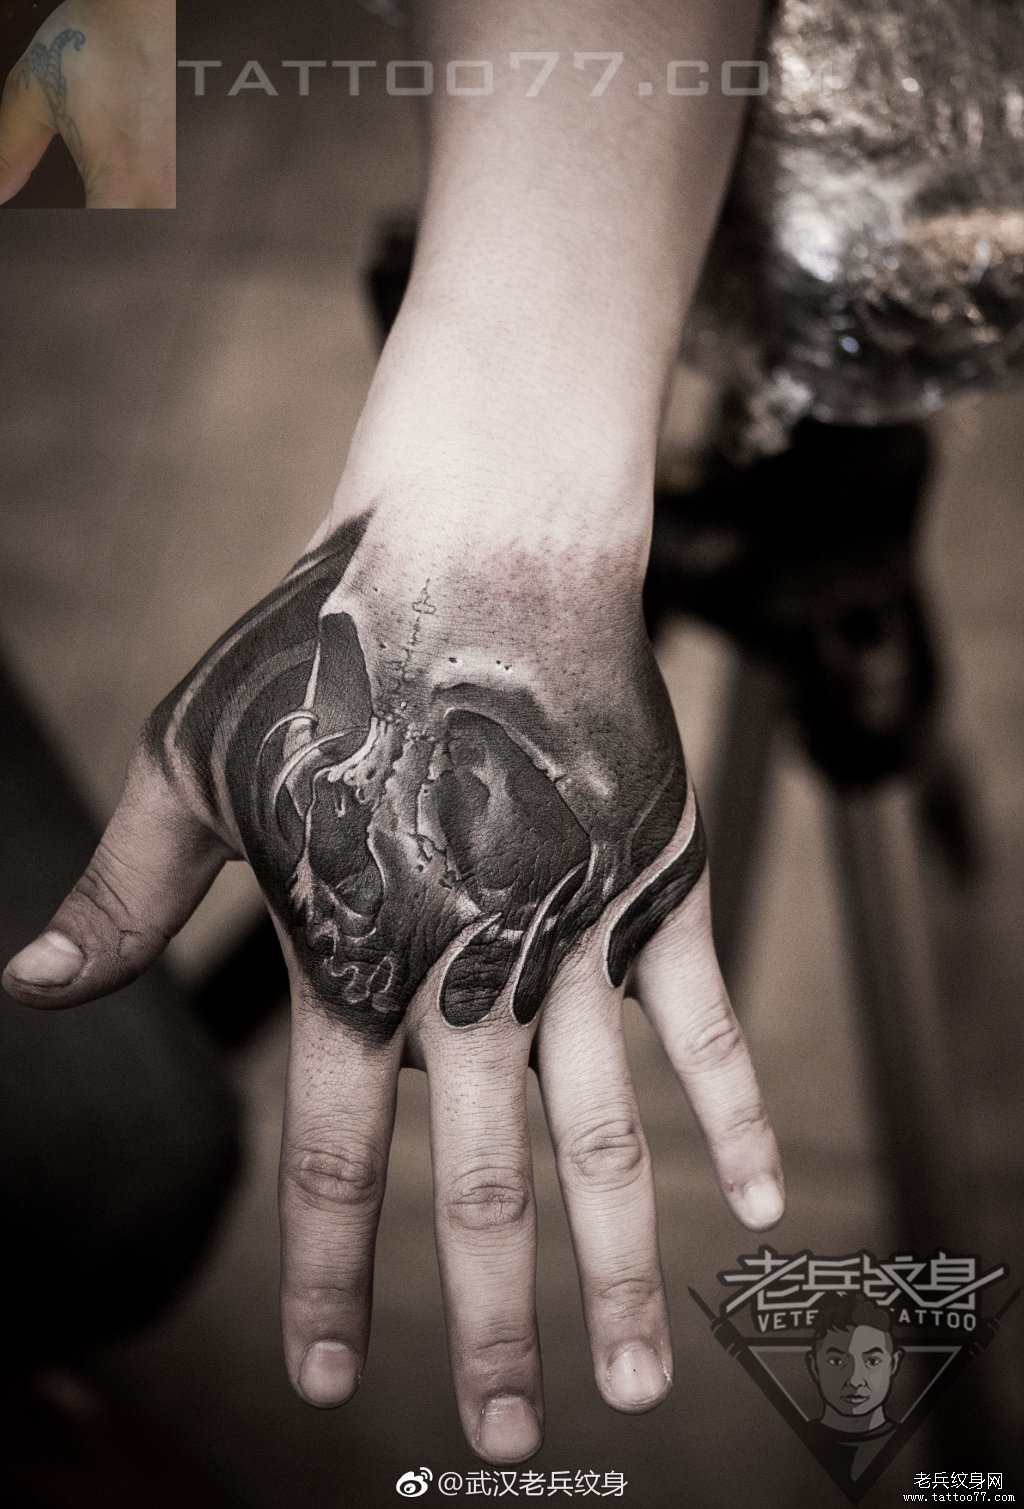 超个性的手背骷髅纹身图案作品遮盖旧纹身